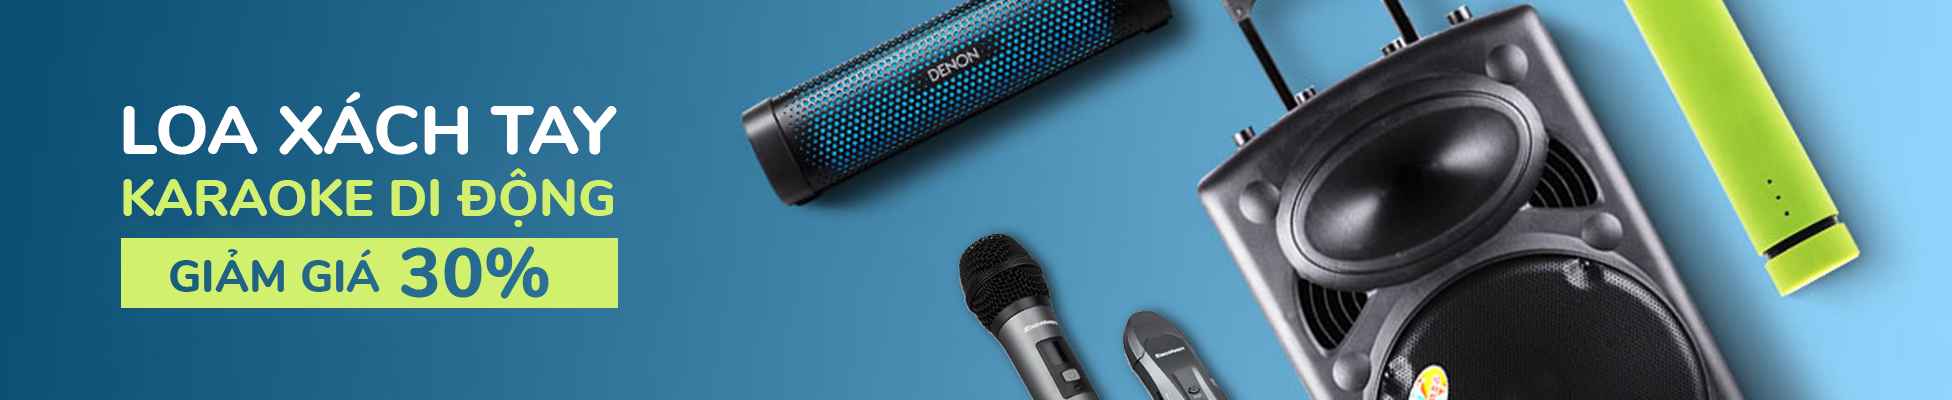 Loa xách tay karaoke bluetooth di động giá rẻ, bảo hành tại TP.CHM